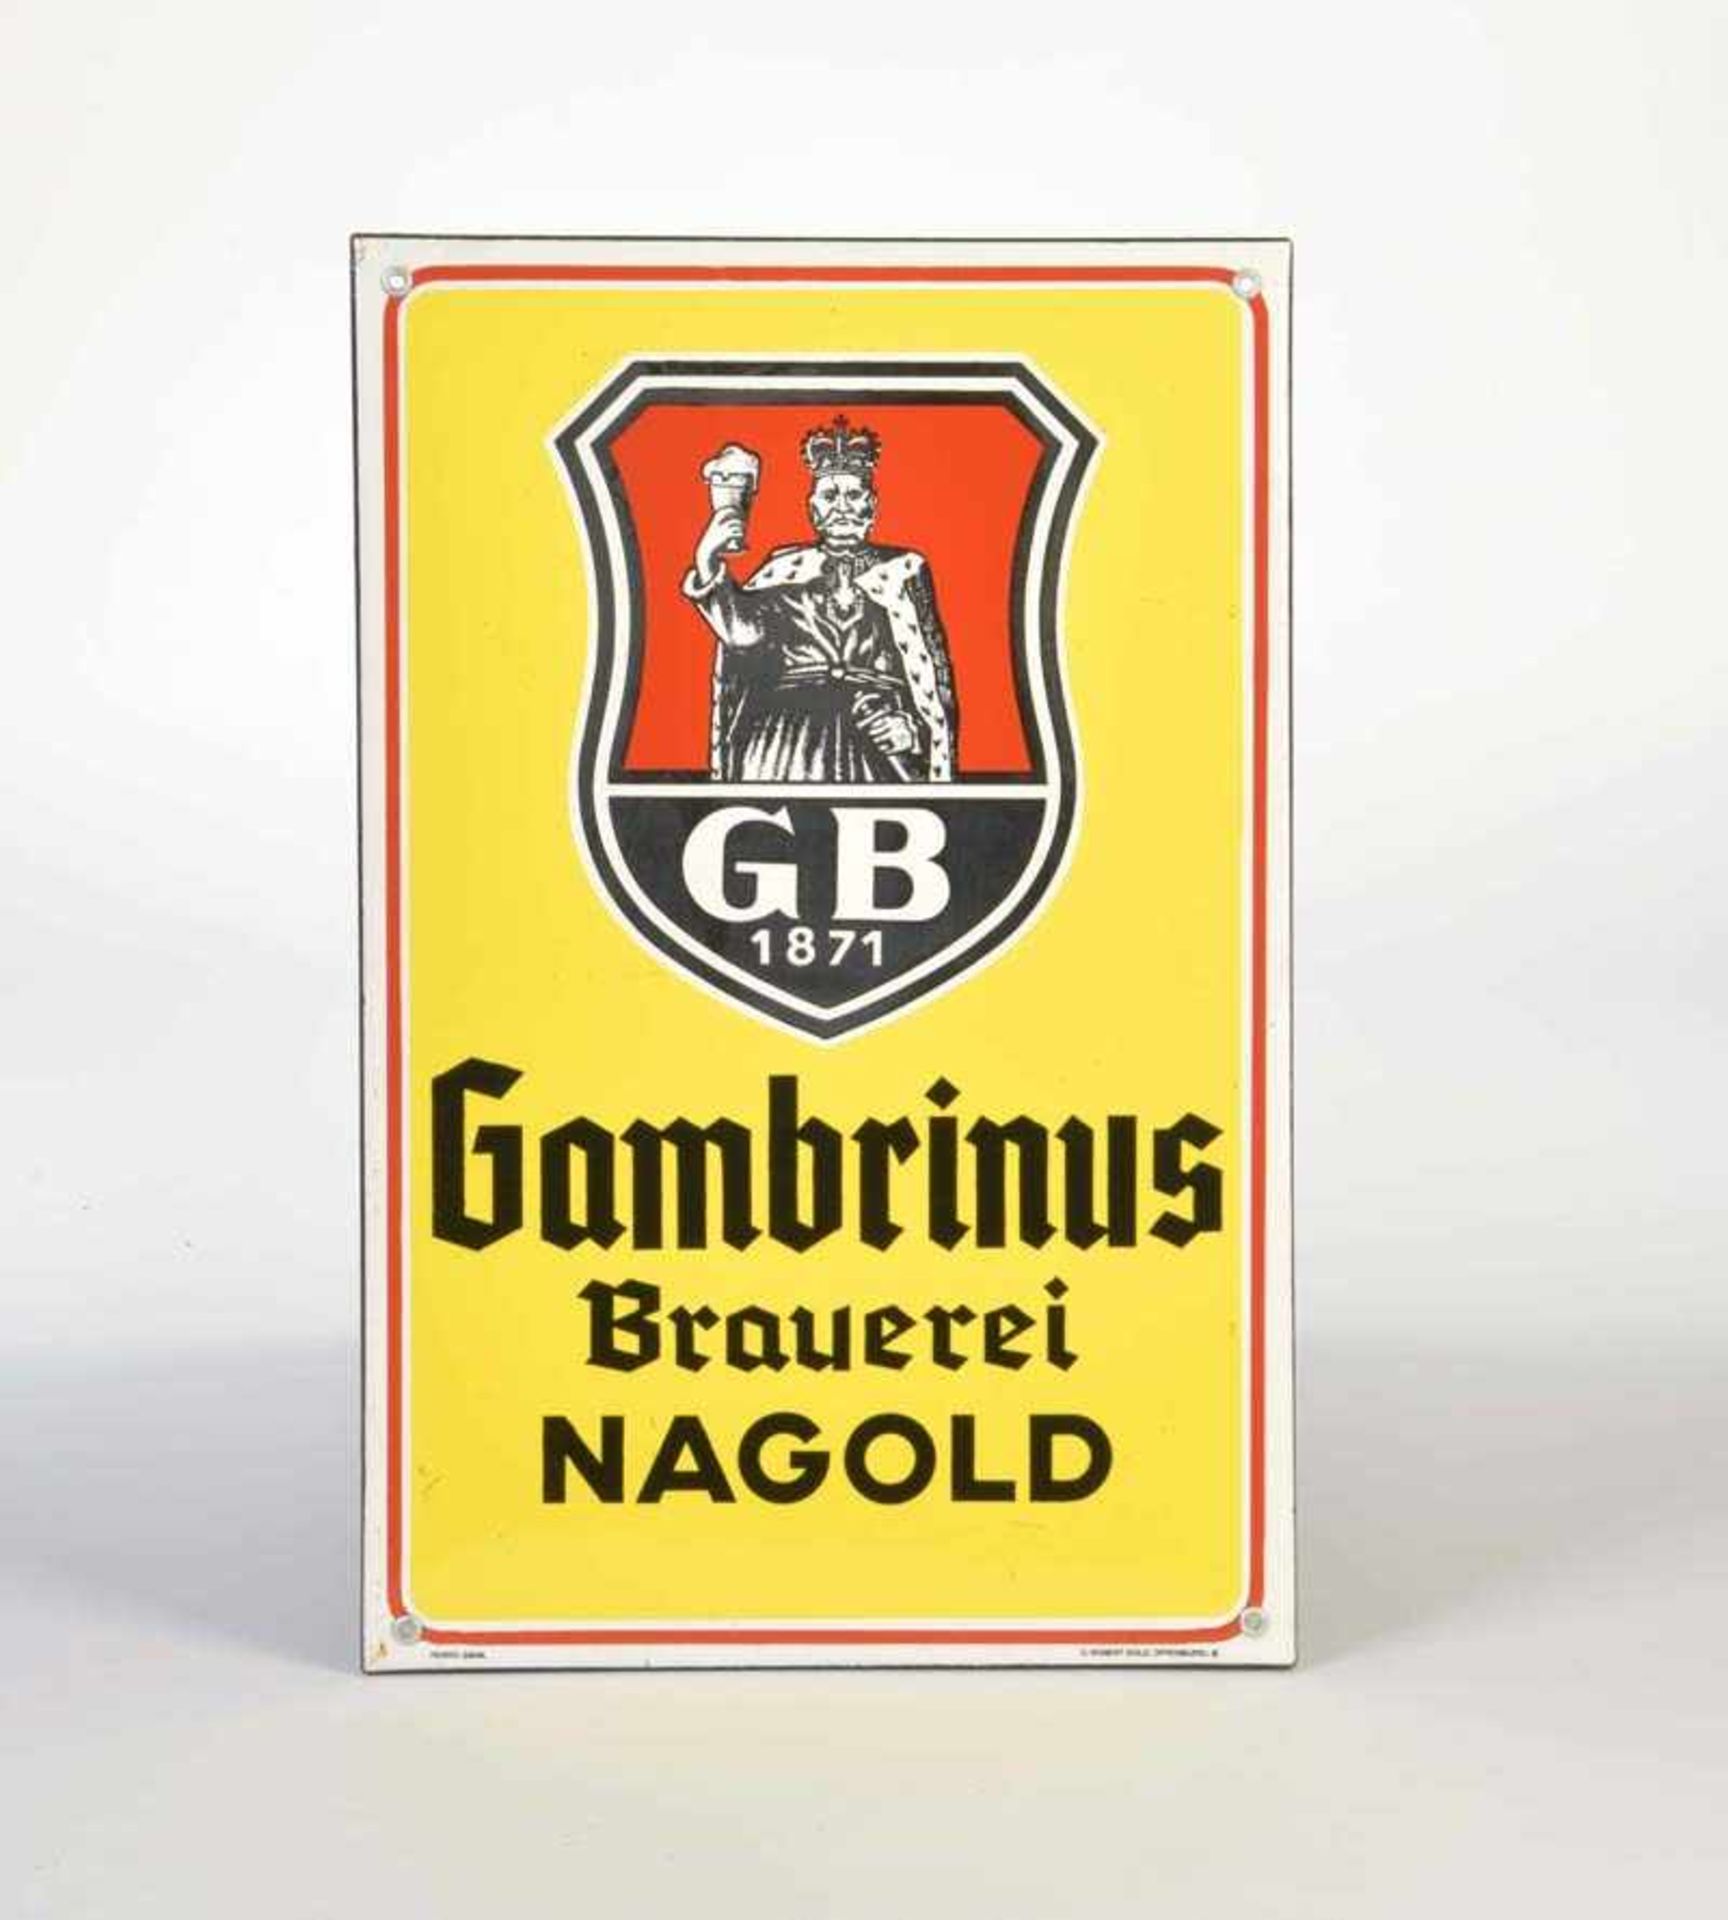 Emailleschild "Gambrinus Brauerei Nagold", 47,5x31,5 cm, C.Robert Dold Offenburg i.B., abgekantet, Z